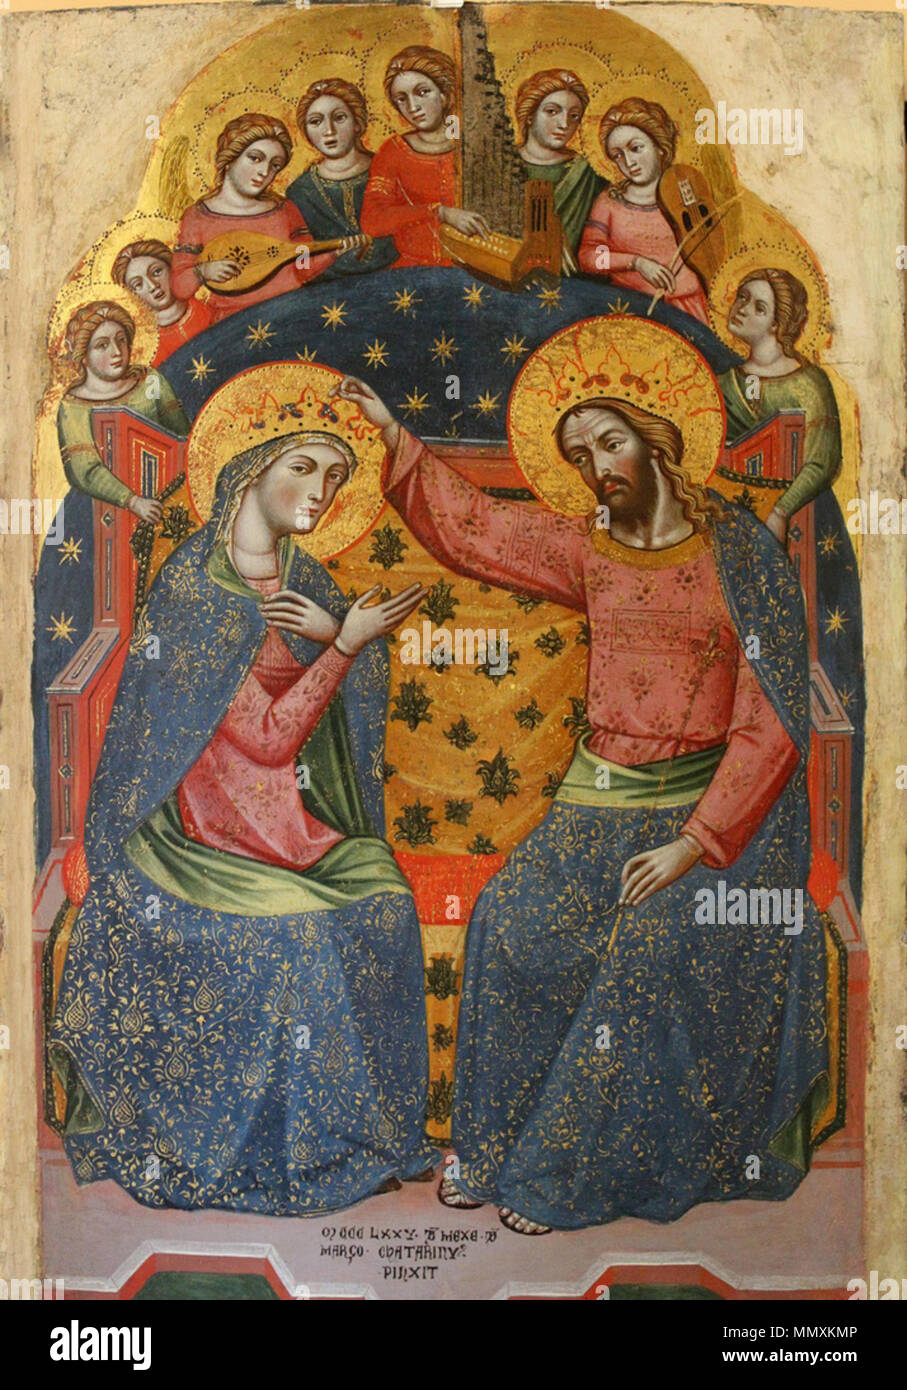 3 Catarino. Coronation of the Virgin. 1375г Gallerie dell'Accademia, Venice Stock Photo